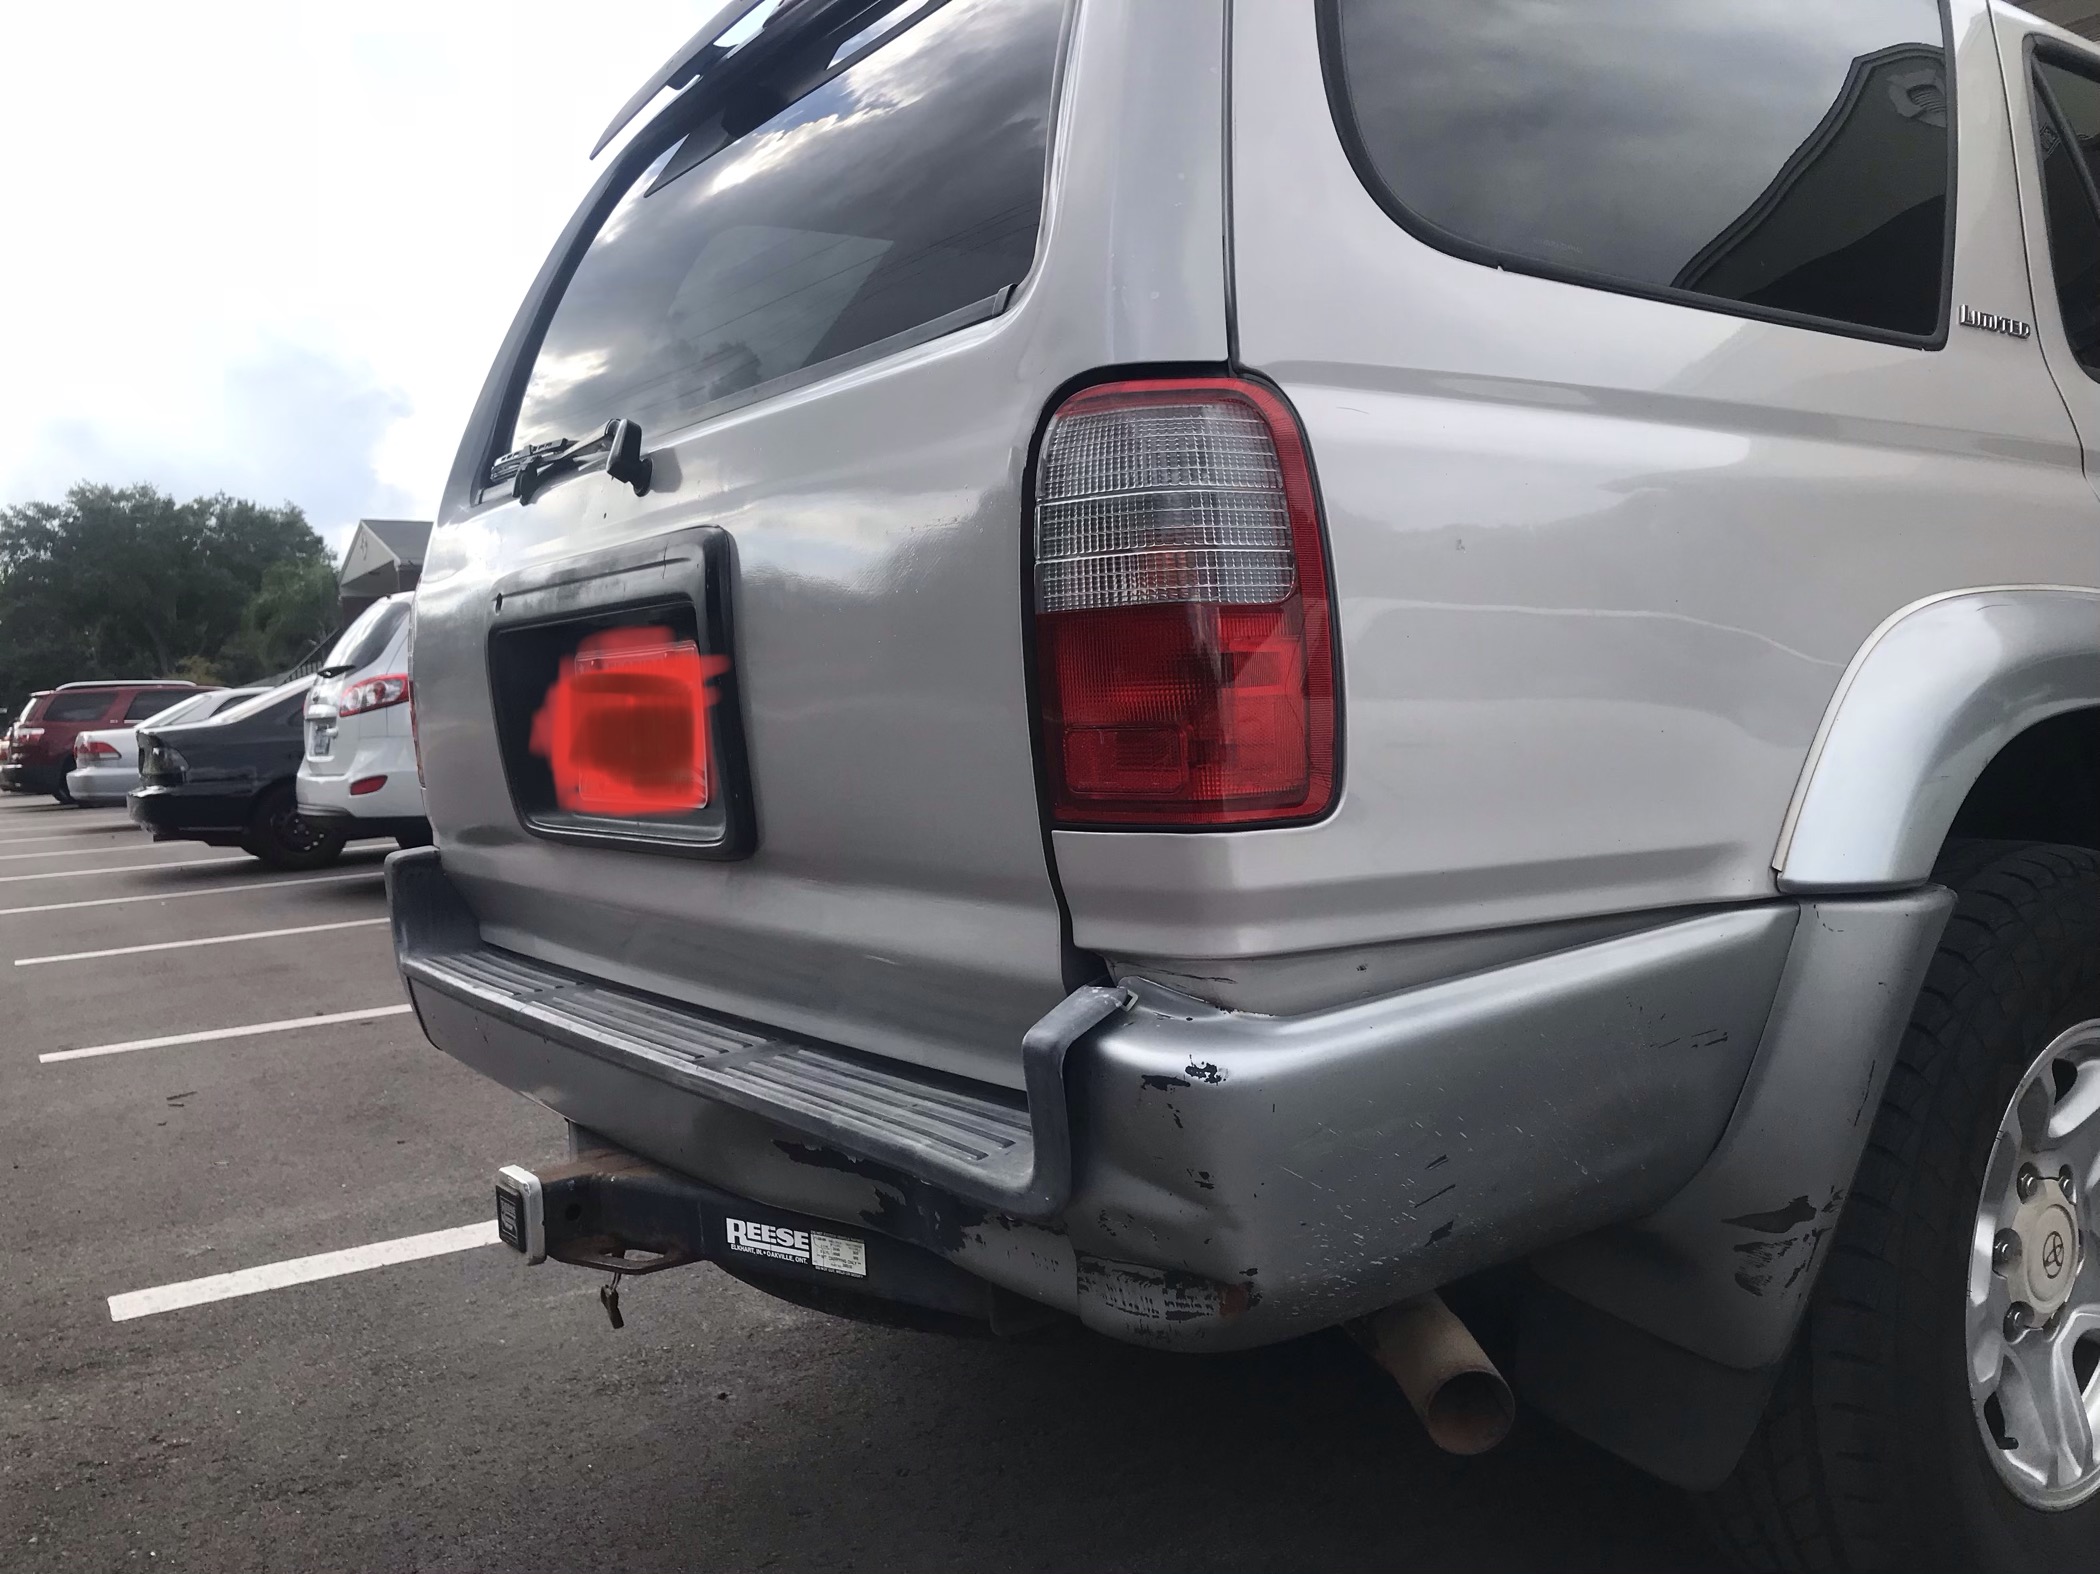 Is this a repair bumper????